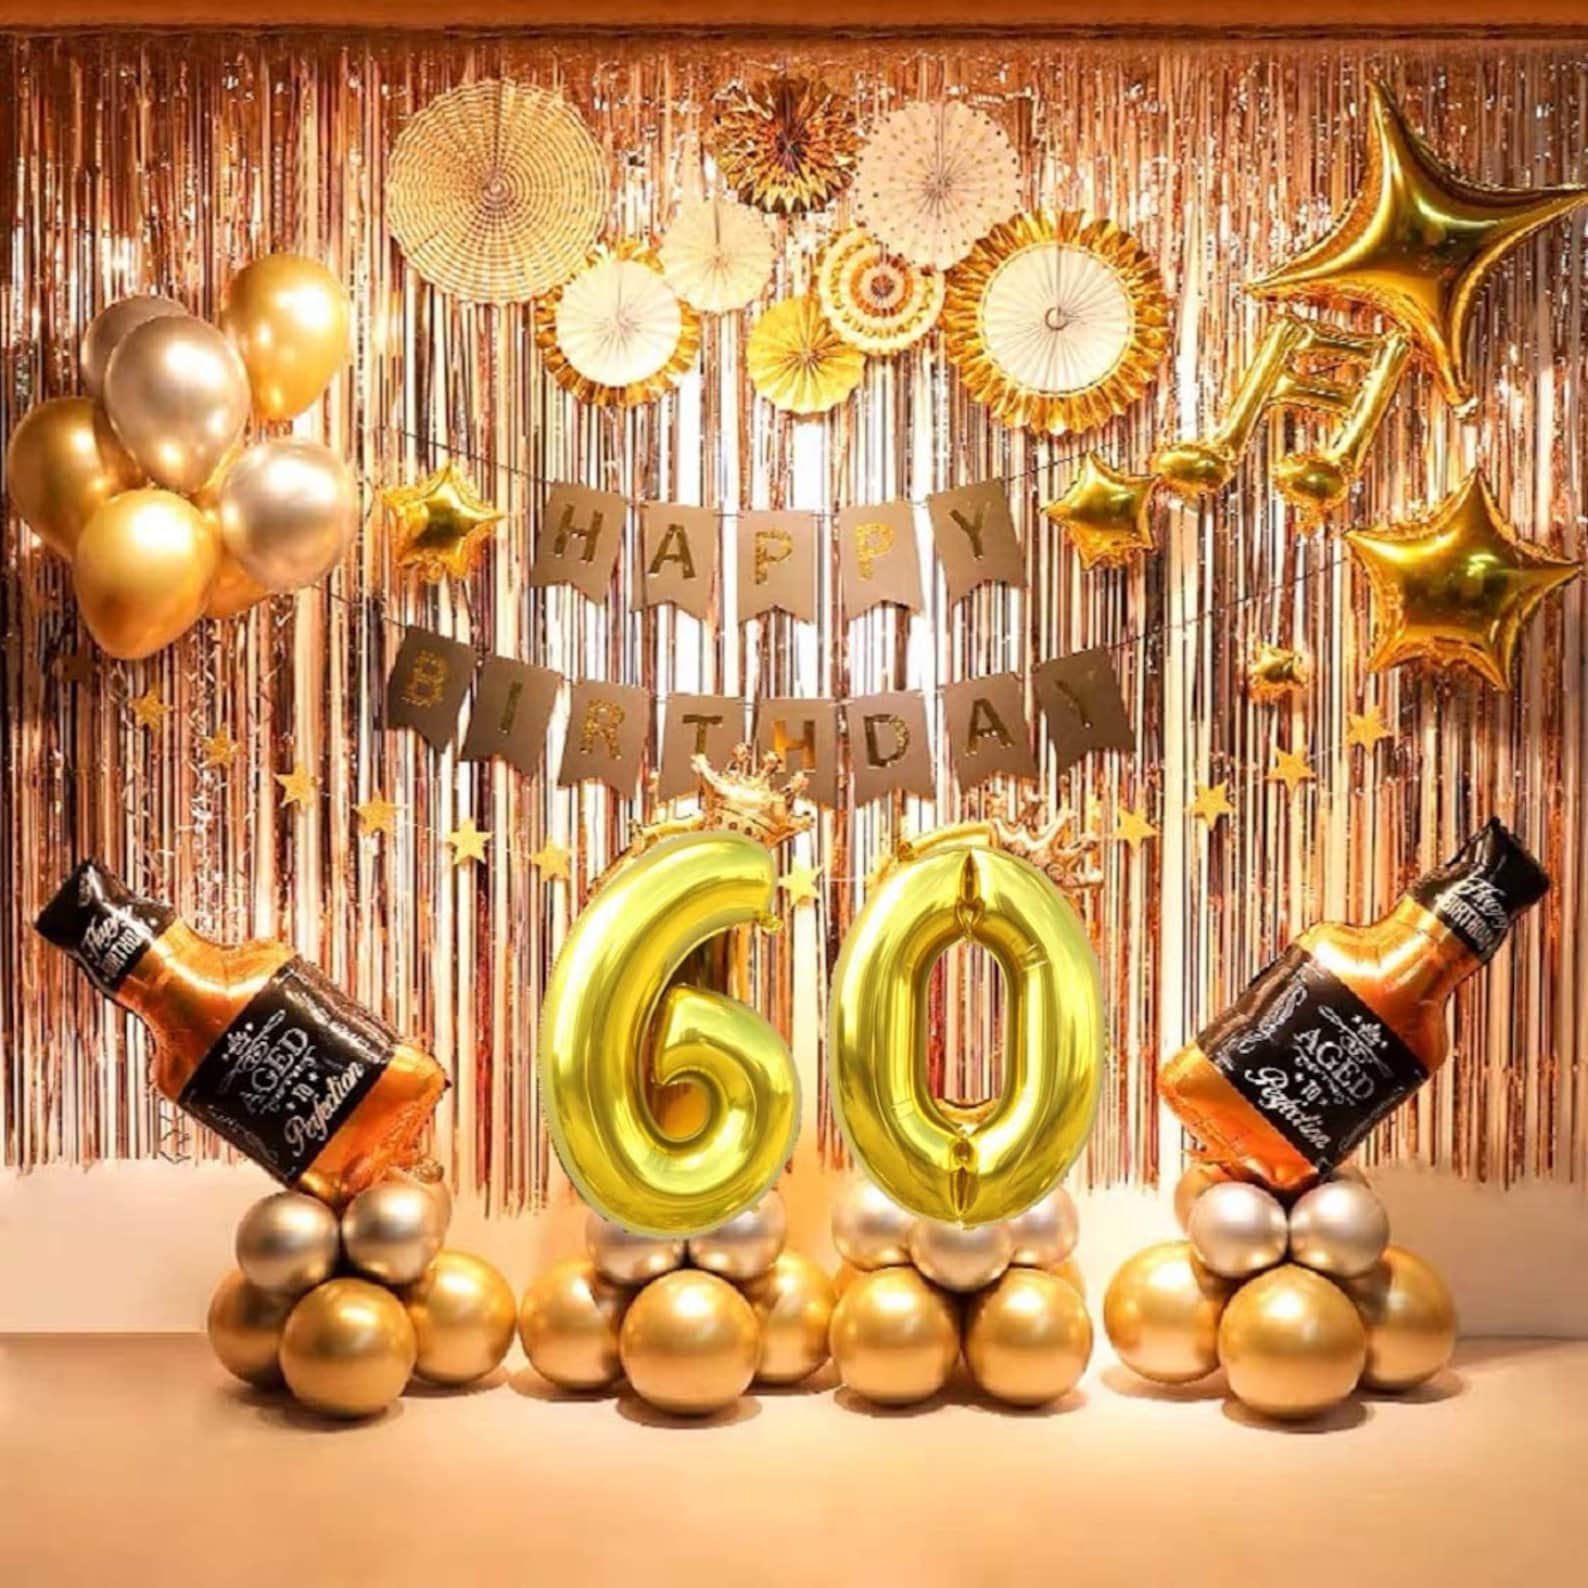 happy-60th-birthday-wishes-60th-birthday-ideas-for-mom-60th-birthday